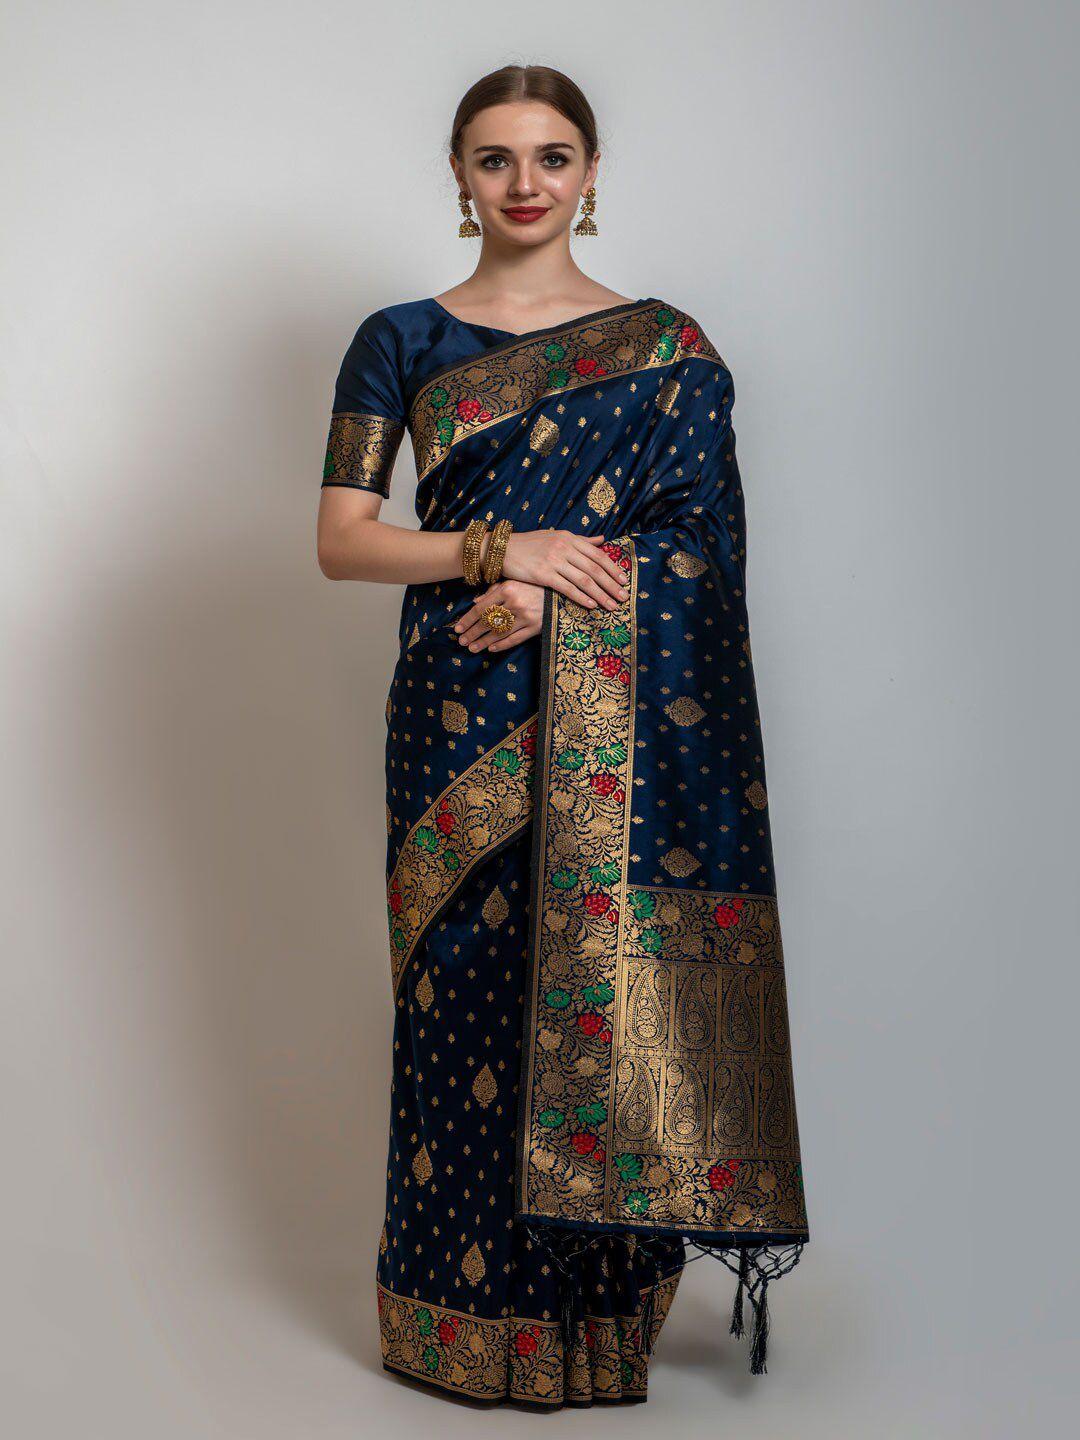 lilots navy blue & gold-toned floral zari banarasi saree